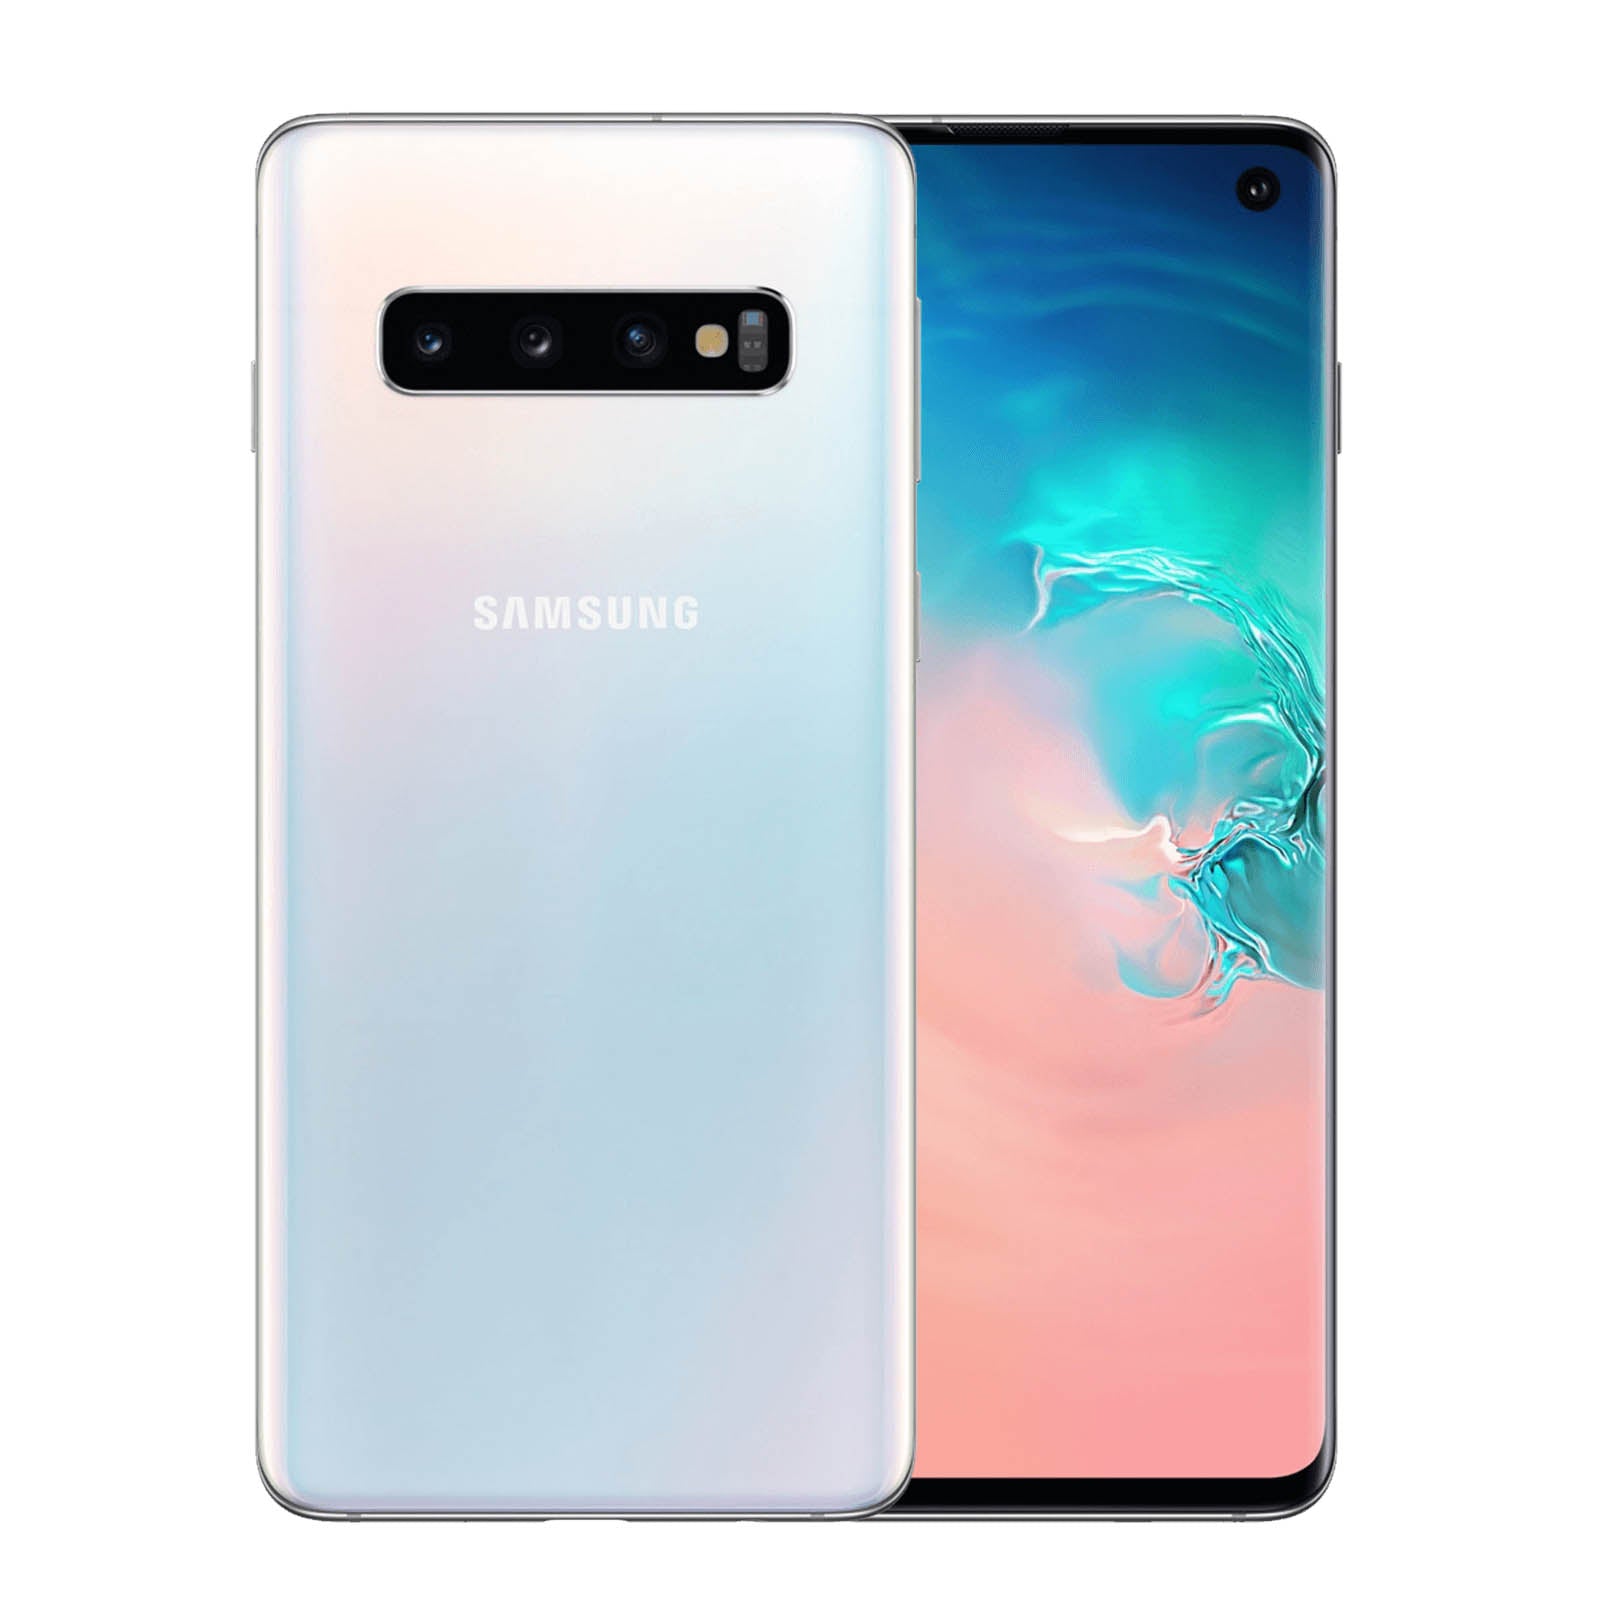 Samsung Galaxy S10 128GB Prism Wihte Fair - Unlocked